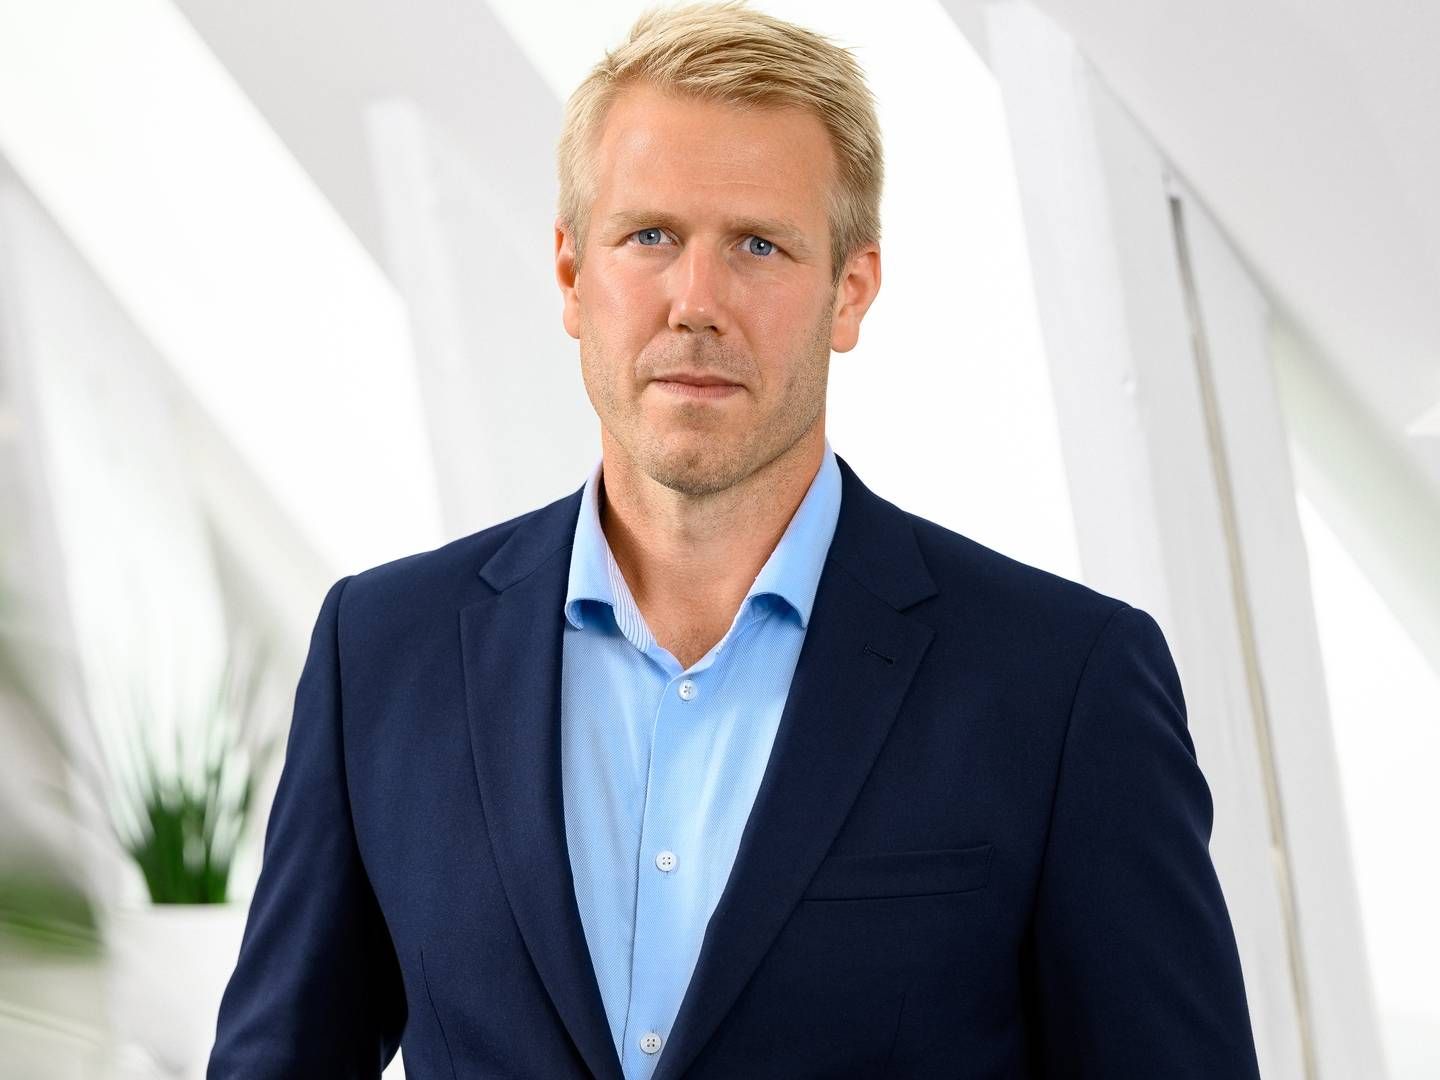 NY ØKONOMISJEF: Erik Hansson er utnevnt som ny økonomidirektør i Kjell Group, eierselskapet til Kjell & Company. | Foto: Kjell Group